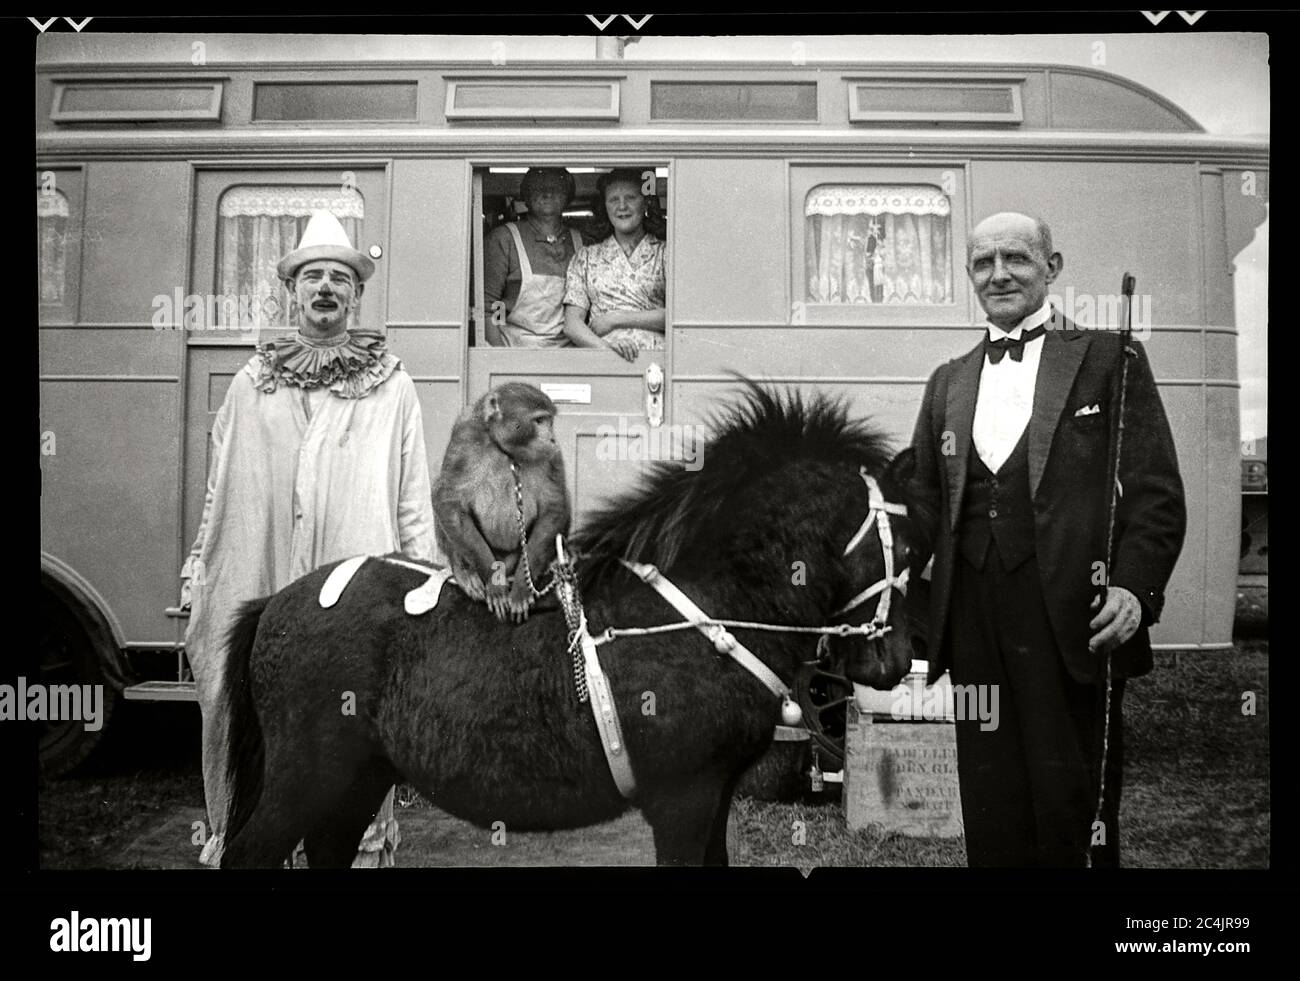 Zirkus-Trailer mit Darstellern in England, 1948. Bild von 6x9 cm Negativ. Stockfoto